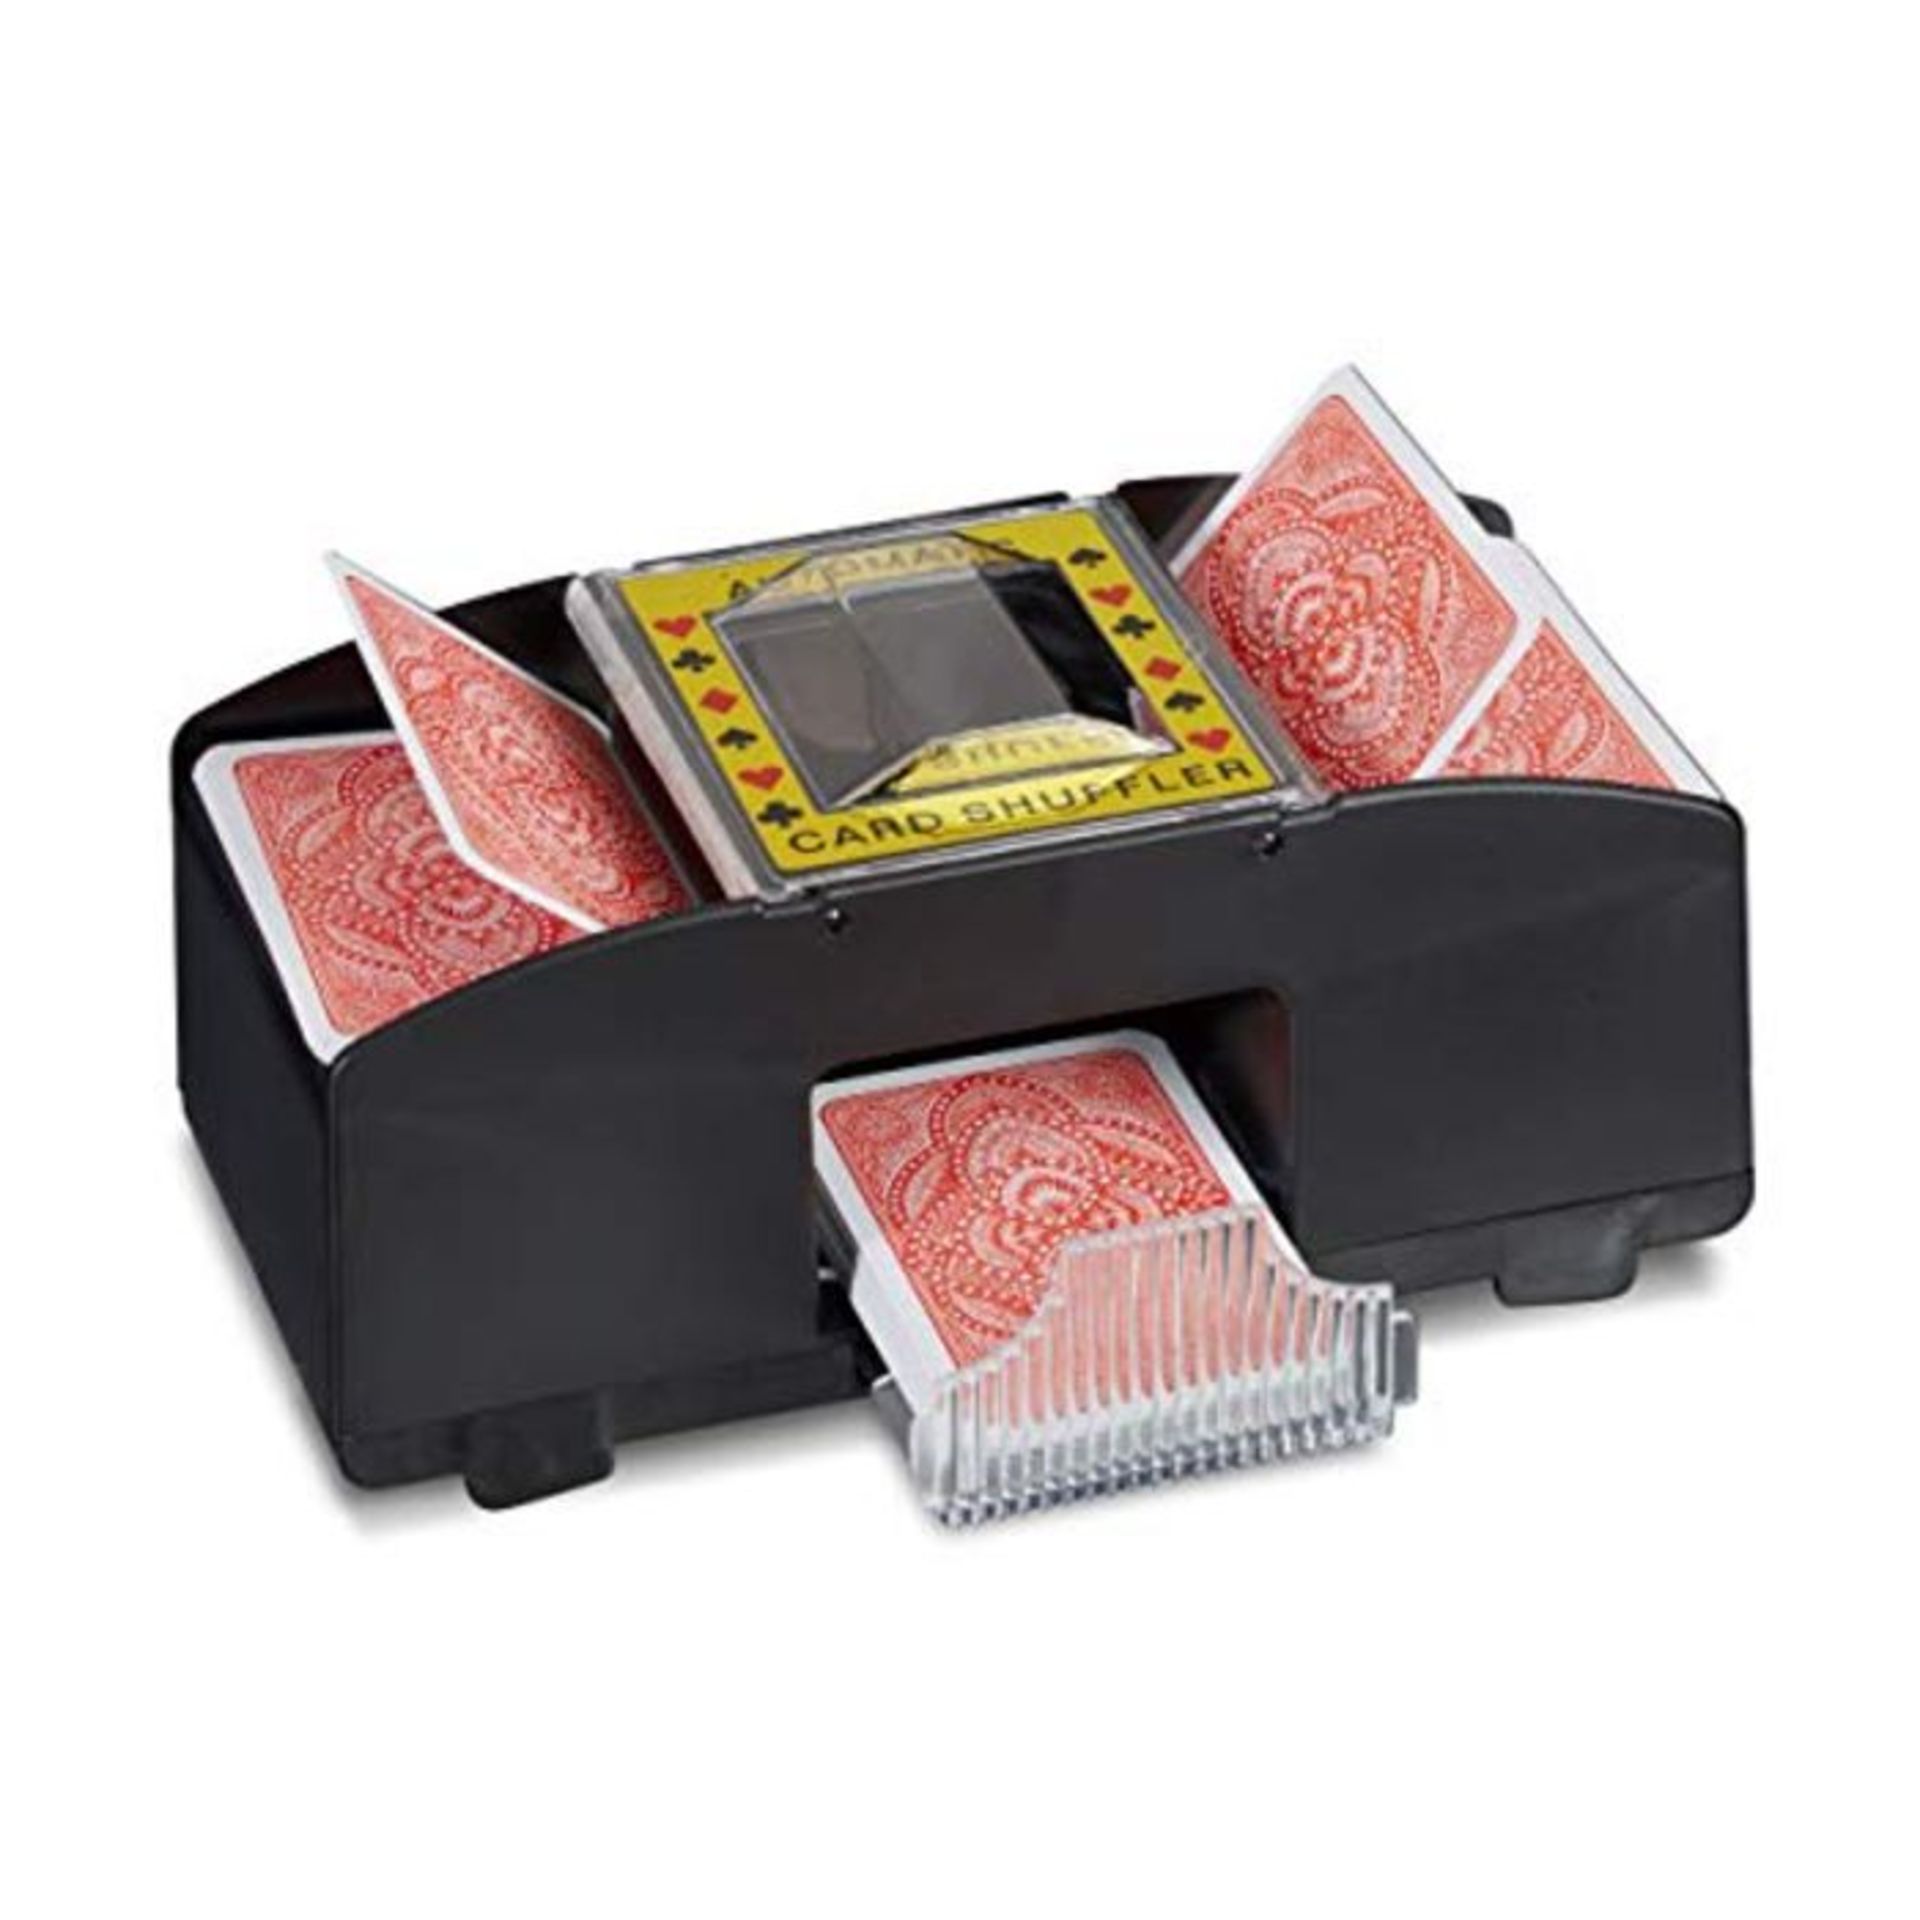 Relaxdays Card Shuffler 2 Decks Electronic Mixing Machine to Shuffle Playing Cards Bat